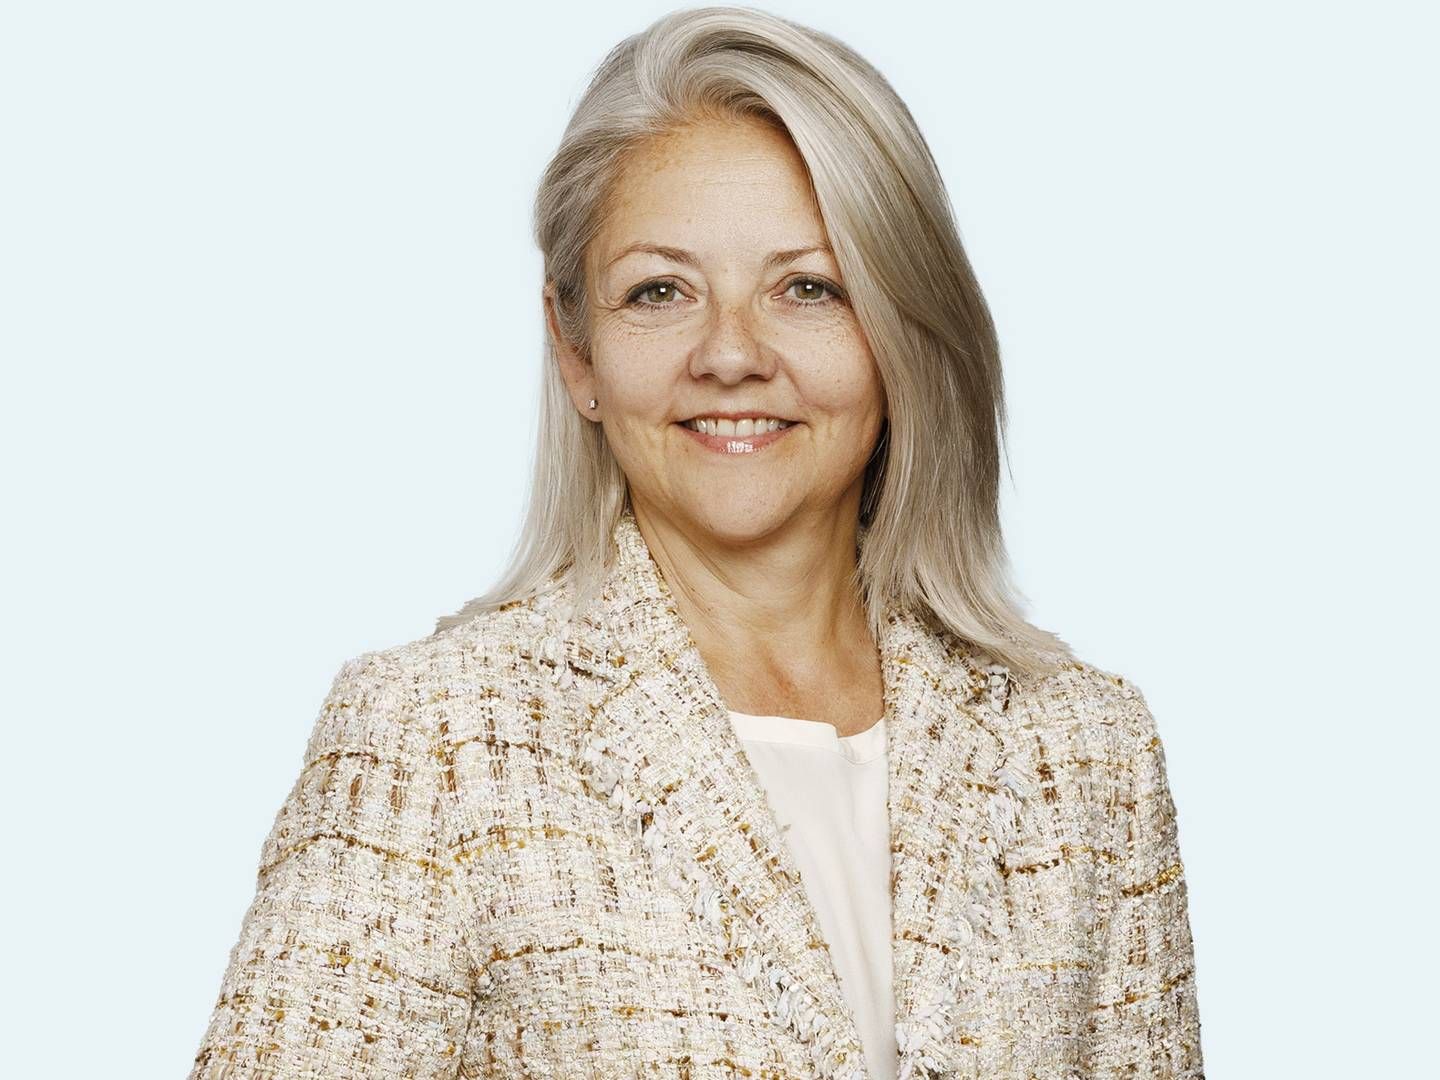 Vibeke Bak Solok er fra 1. april ny direktør hos Lunar Bank. Hun kommer fra en stilling som finansdirektør i ATP Ejendomme, men kender banken fra halvandet år som bestyrelsesmedlem. | Foto: Lunar / PR